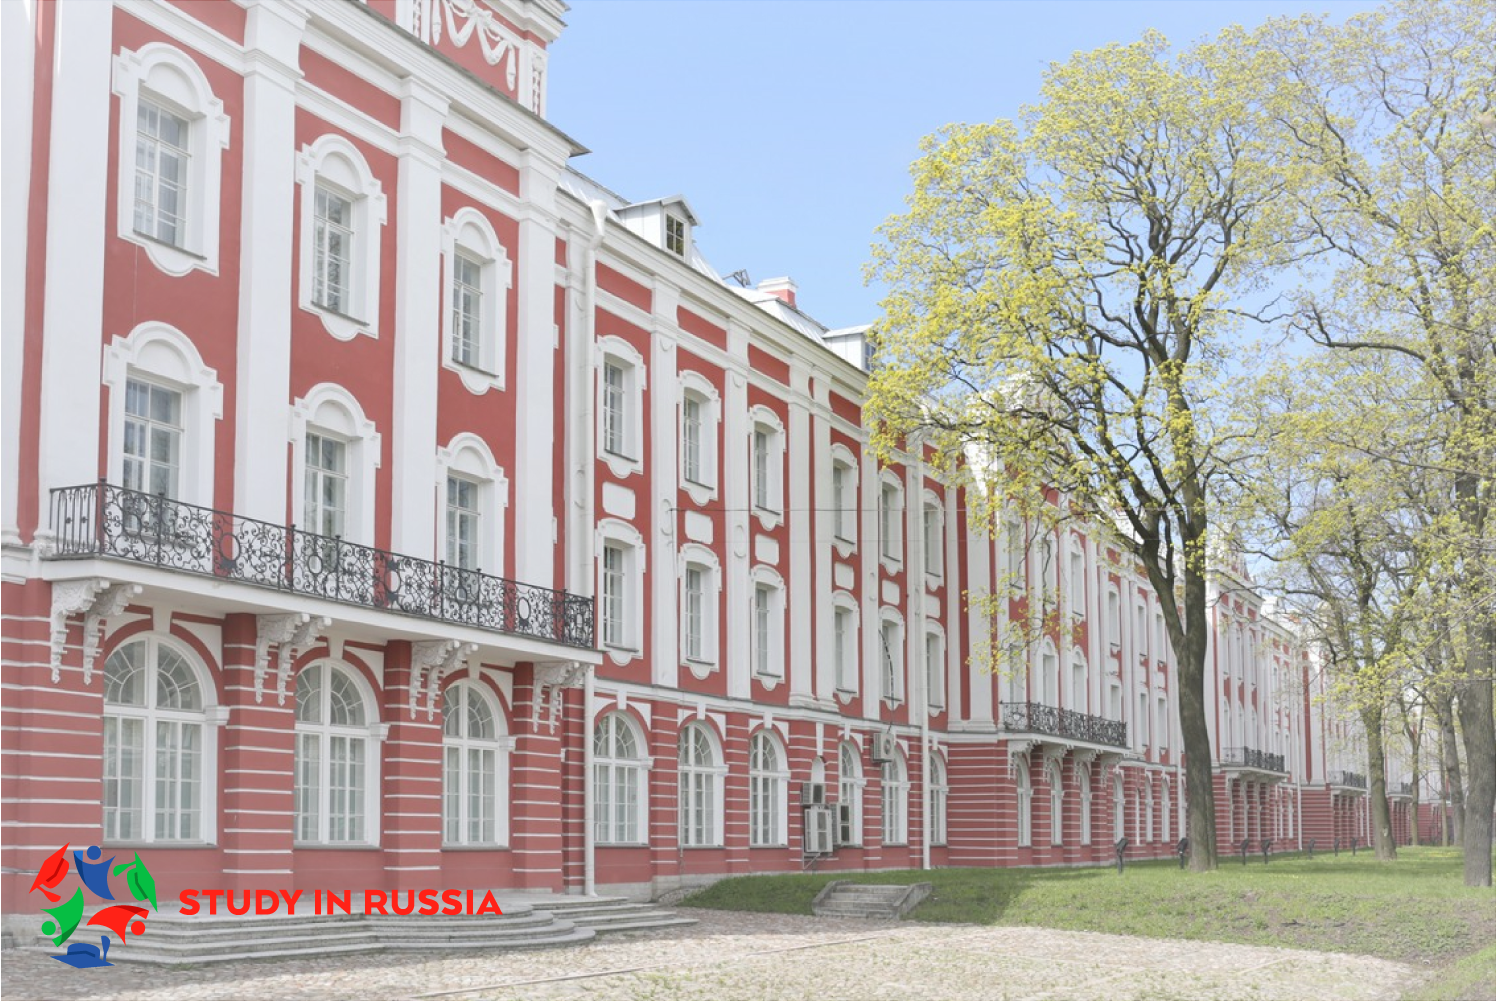 СПбГУ приглашает иностранных абитуриентов освоить русский язык и подготовиться к поступлению